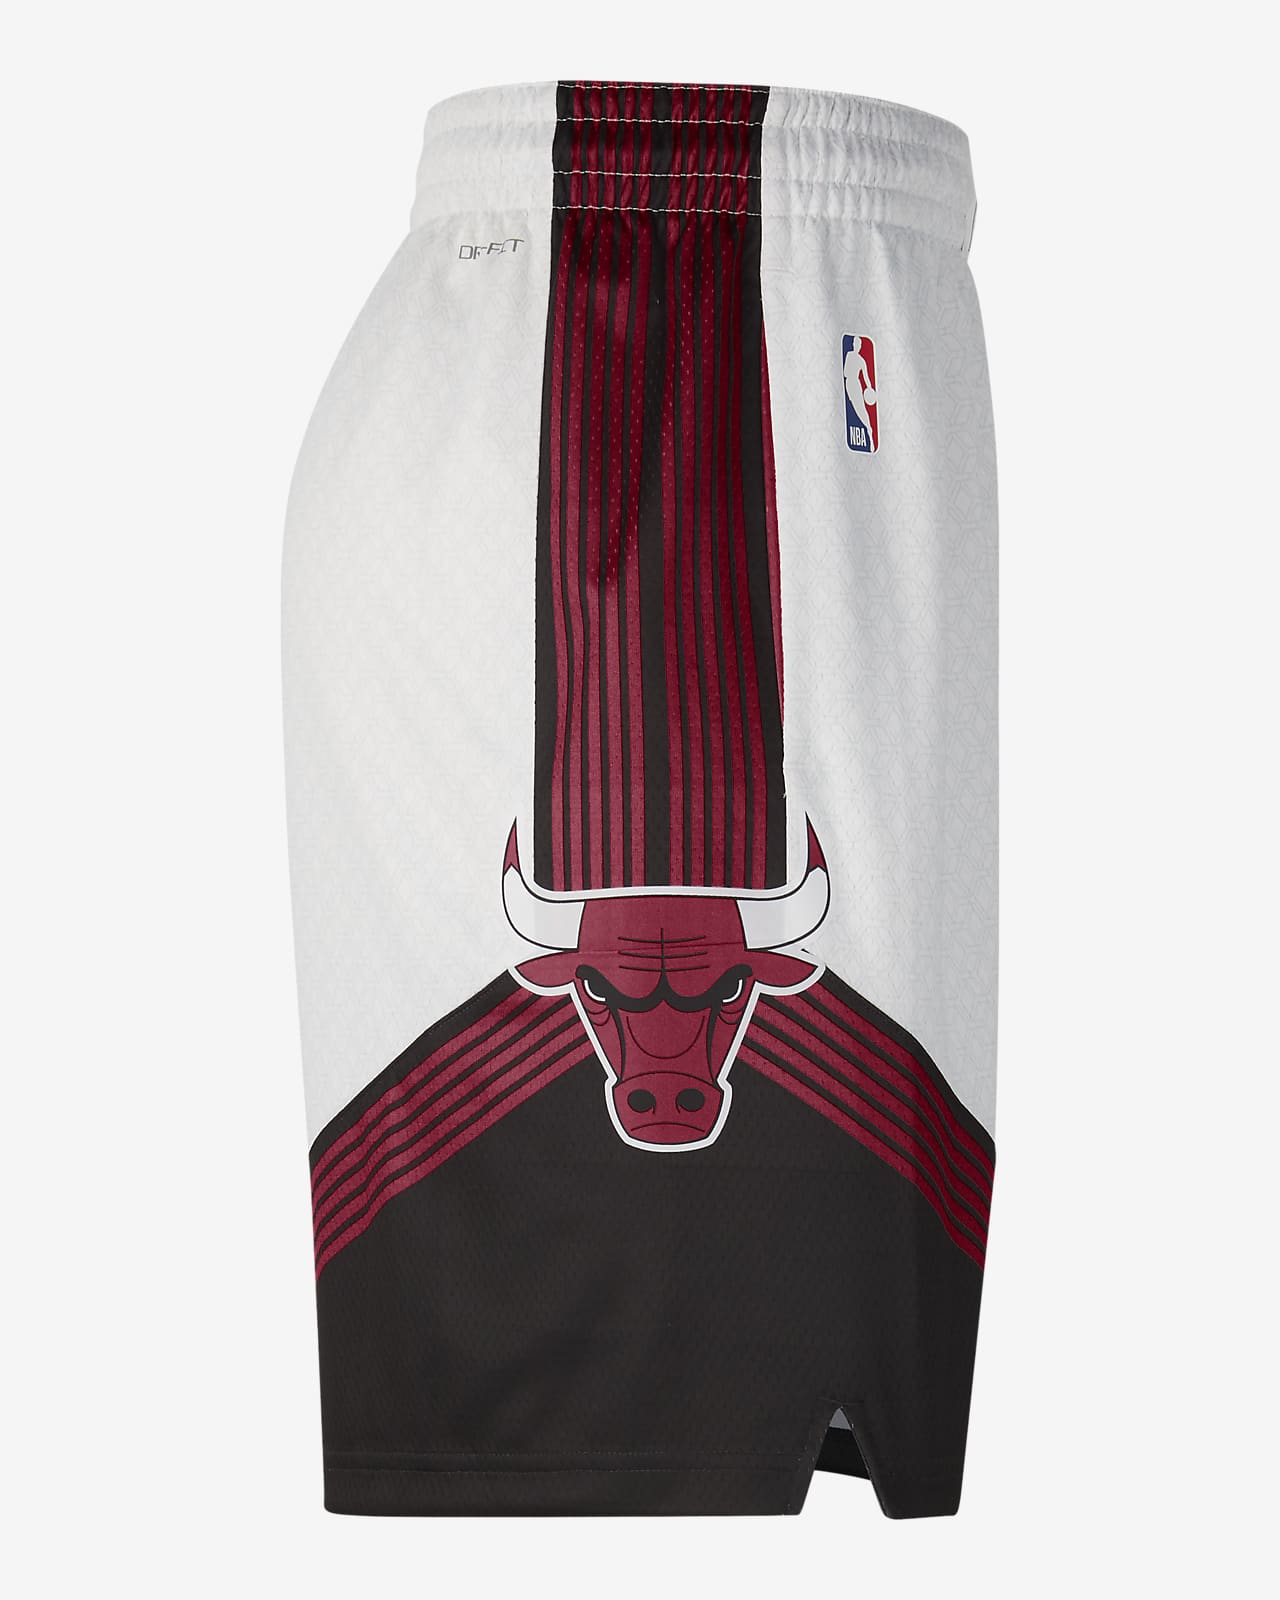 Chicago Bulls NBA Bermuda shorts - Jogger Shorts - Shorts - CLOTHING - Man  